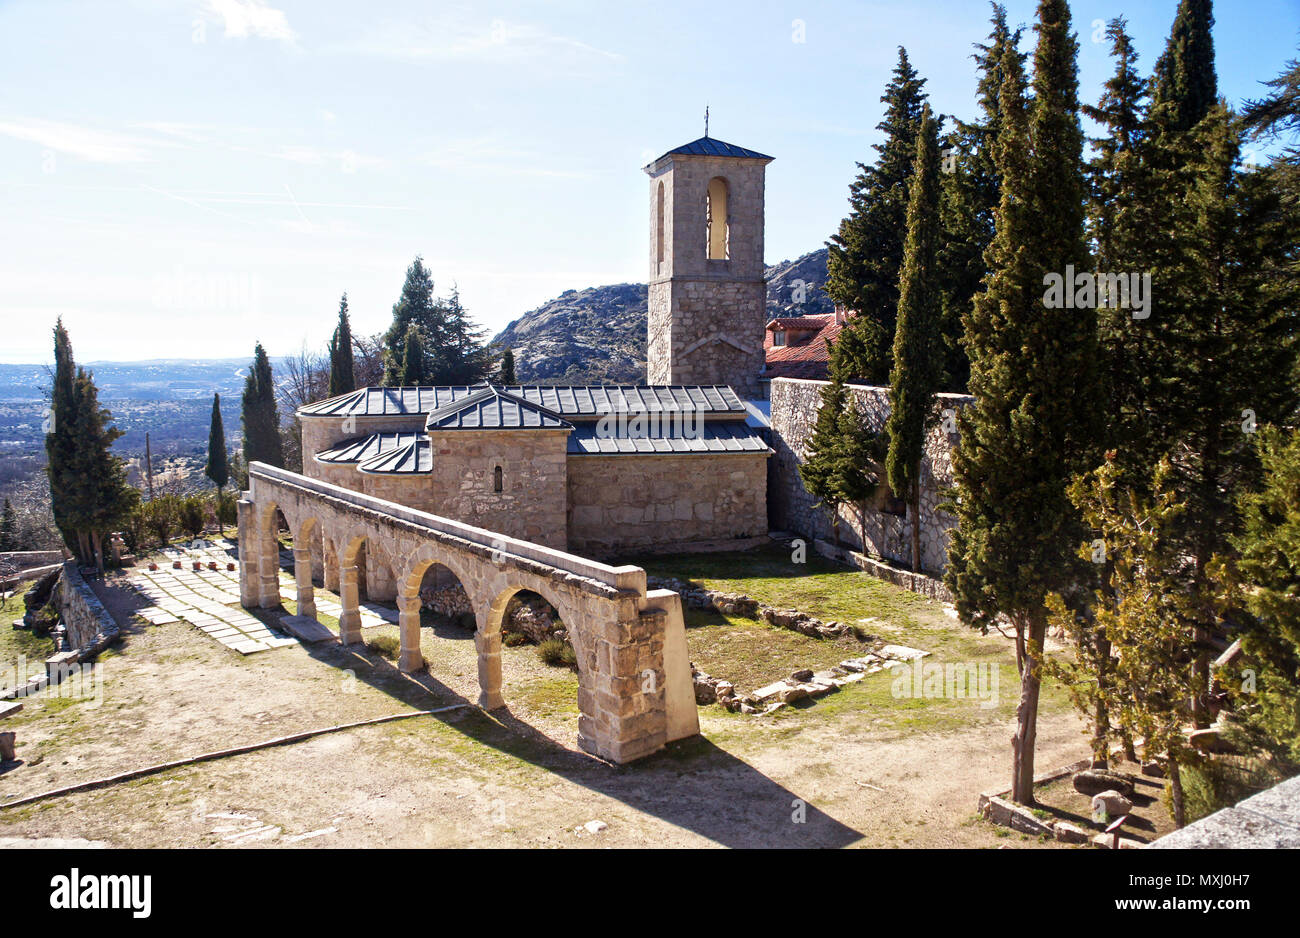 Convento de San Antonio en La Cabrera. Sierra de Madrid. España Stock Photo